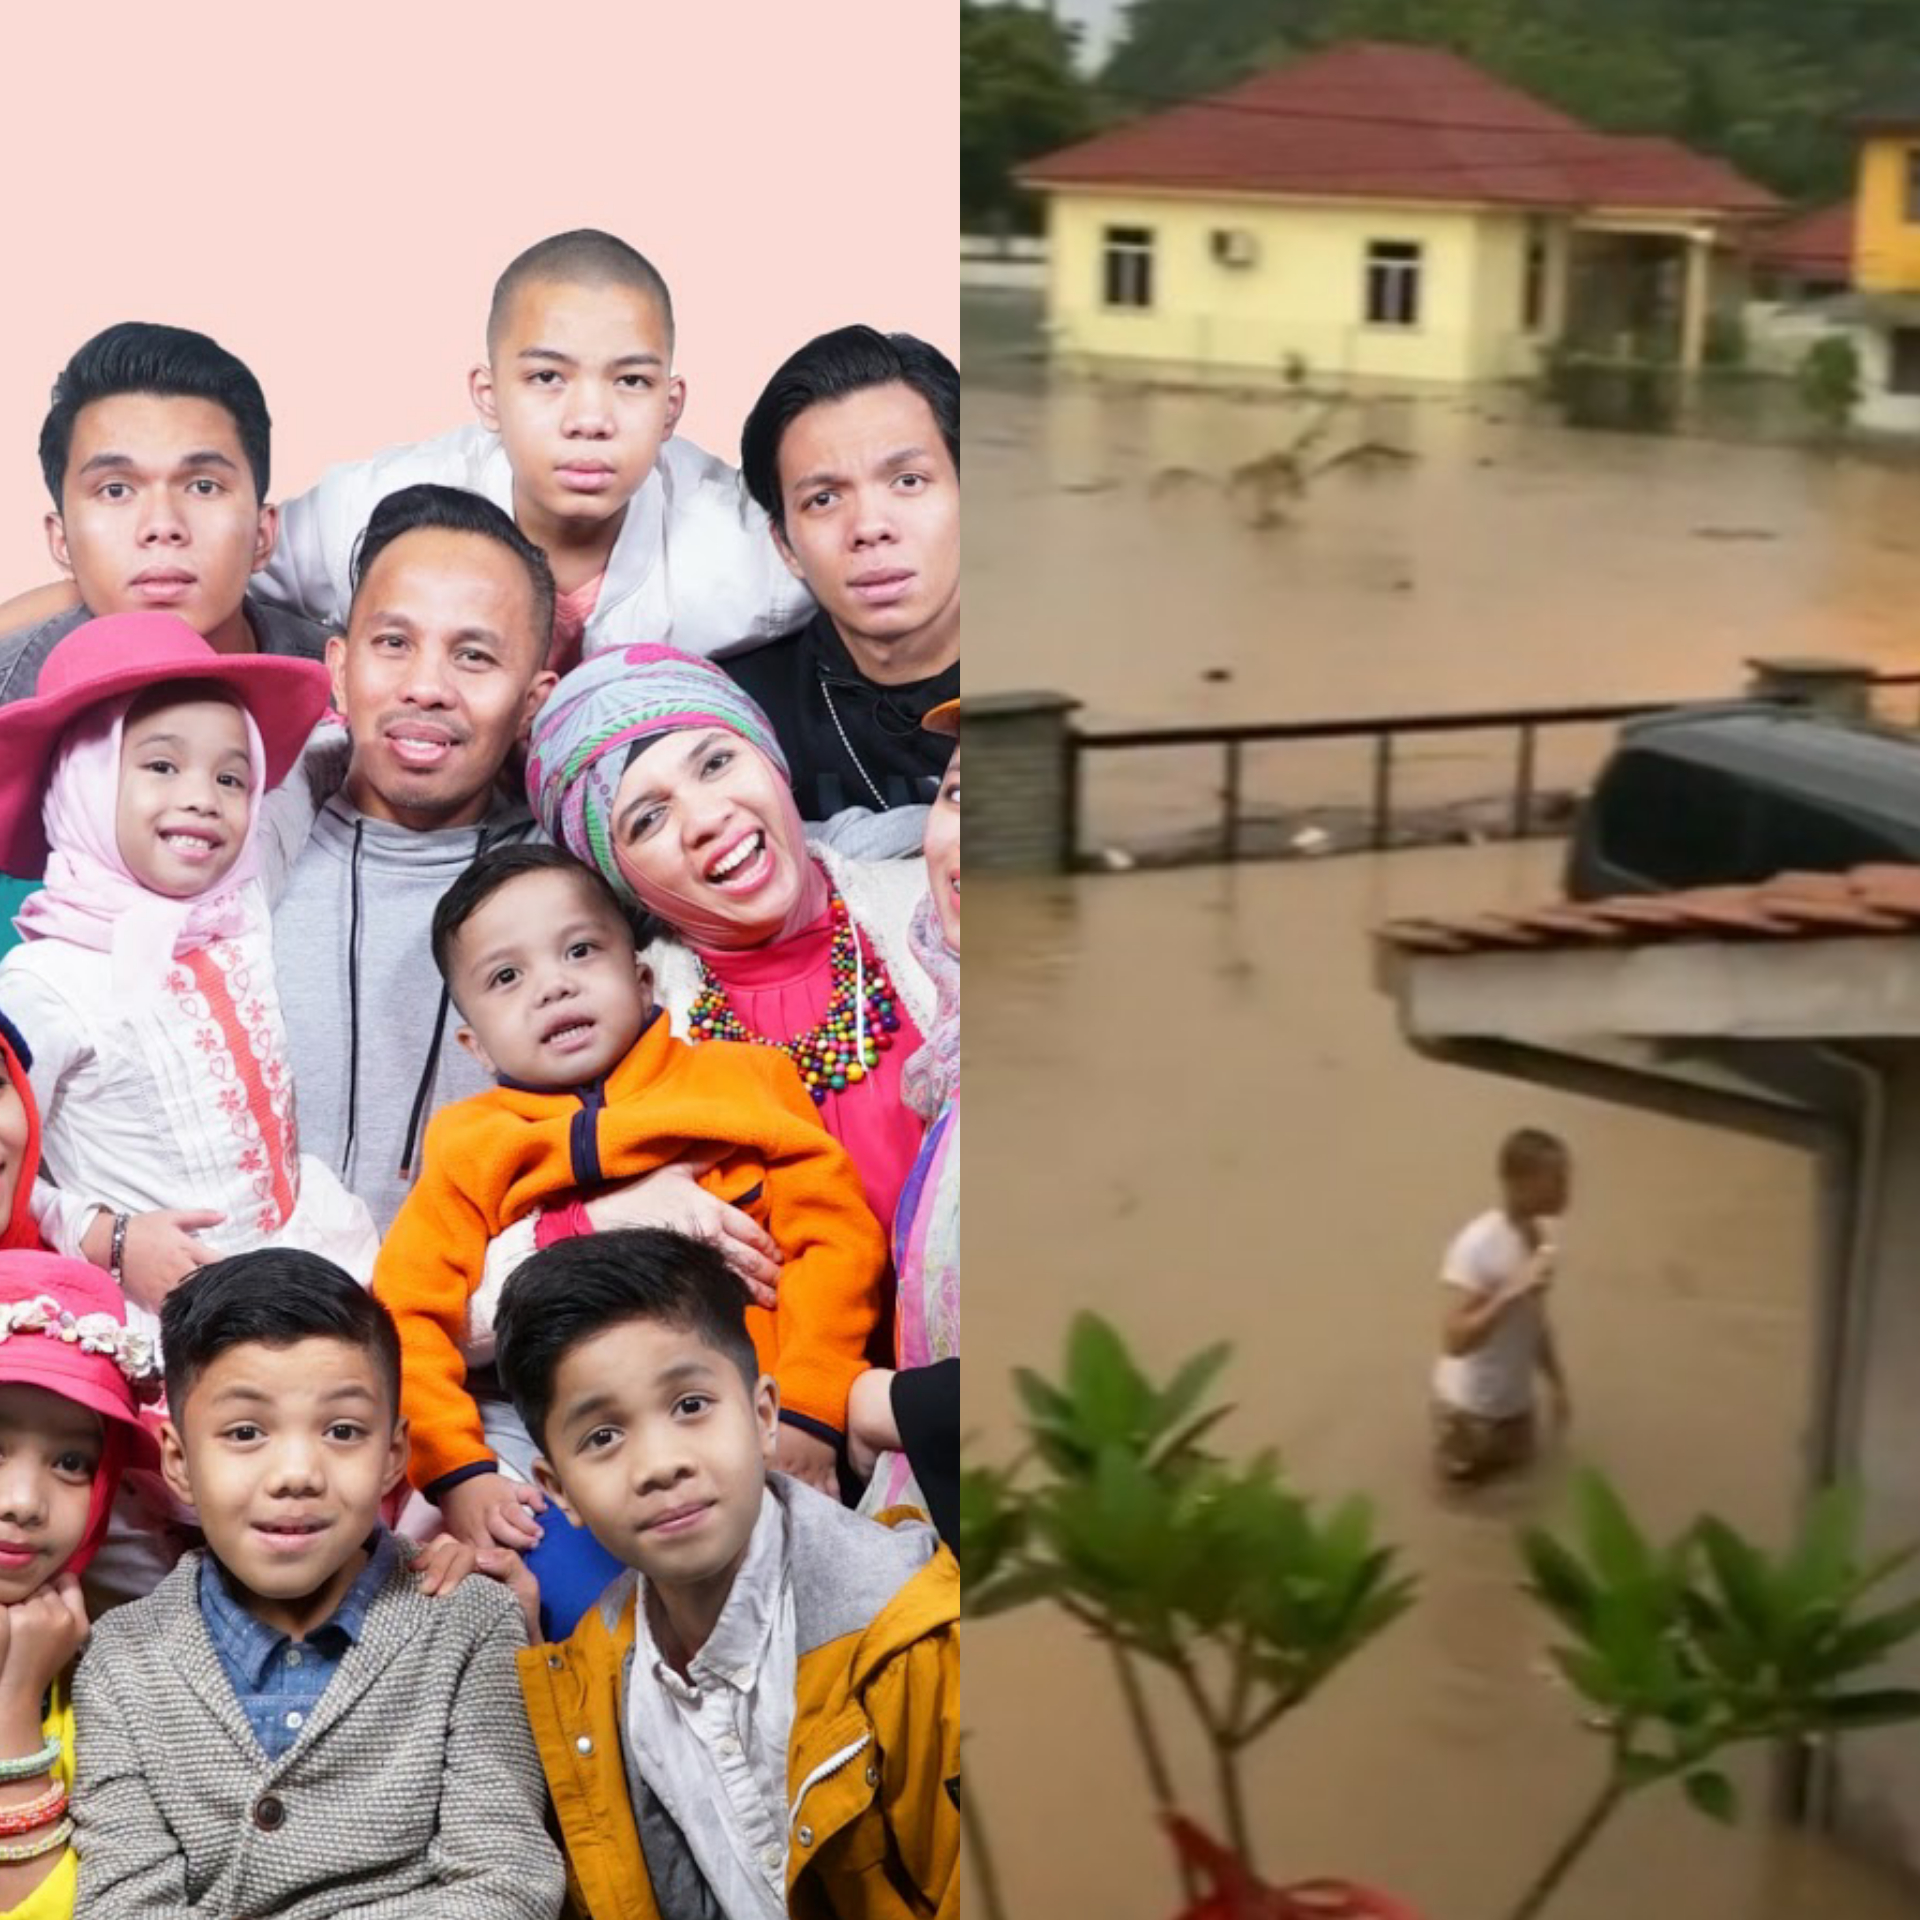 Fakta-fakta Gen Halilintar Terjebak Banjir di Rumah, Cari Polisi hingga Saaih Halilintar Live di Youtube